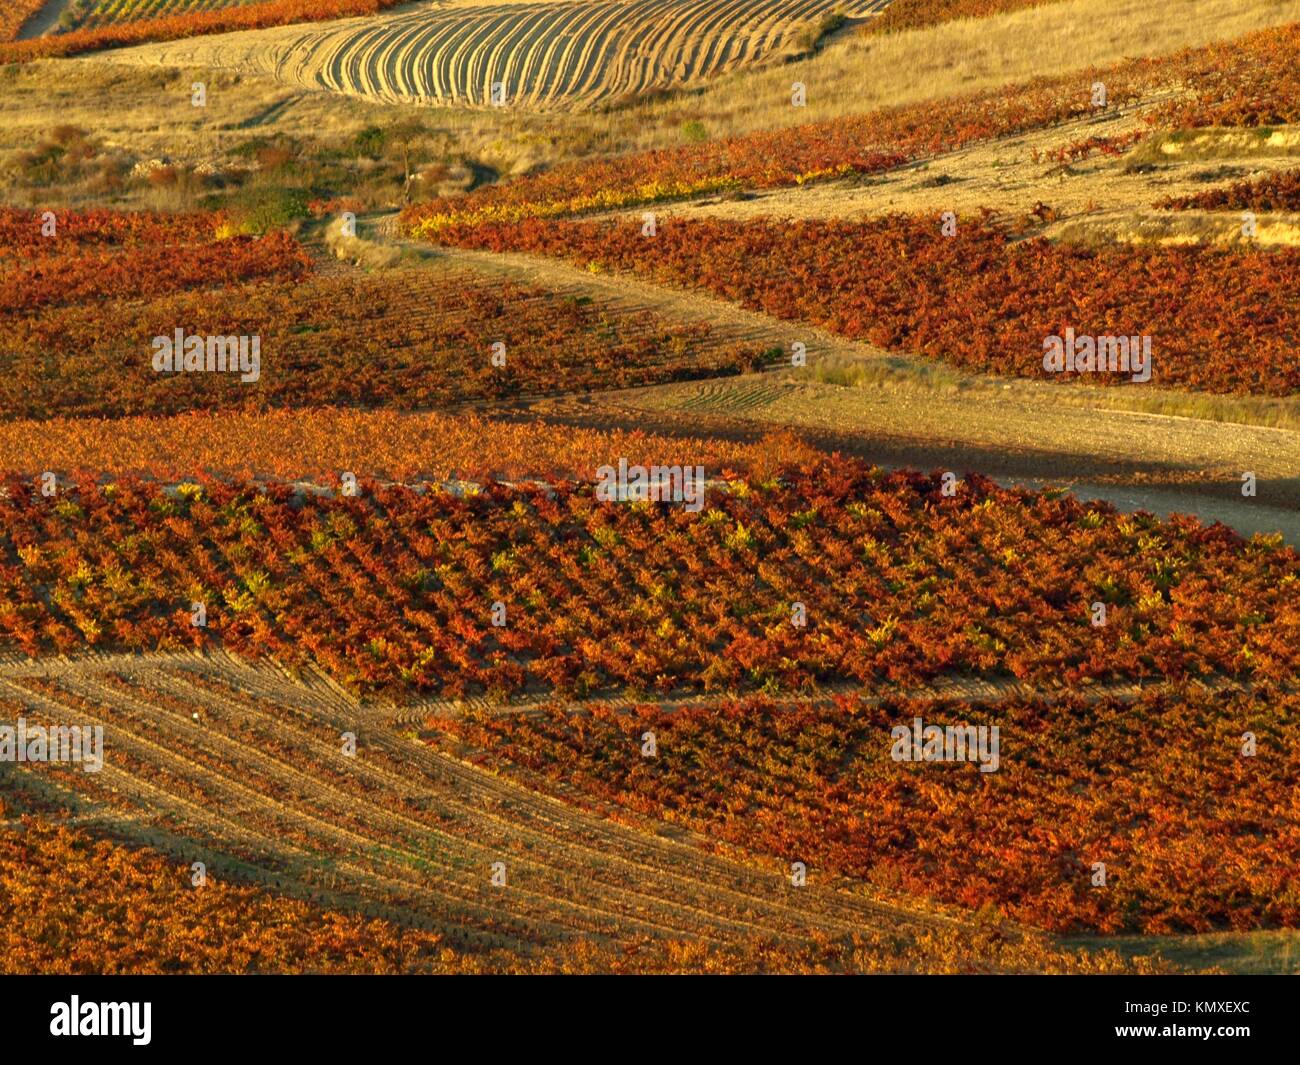 la rioja landscape in autumn Stock Photo